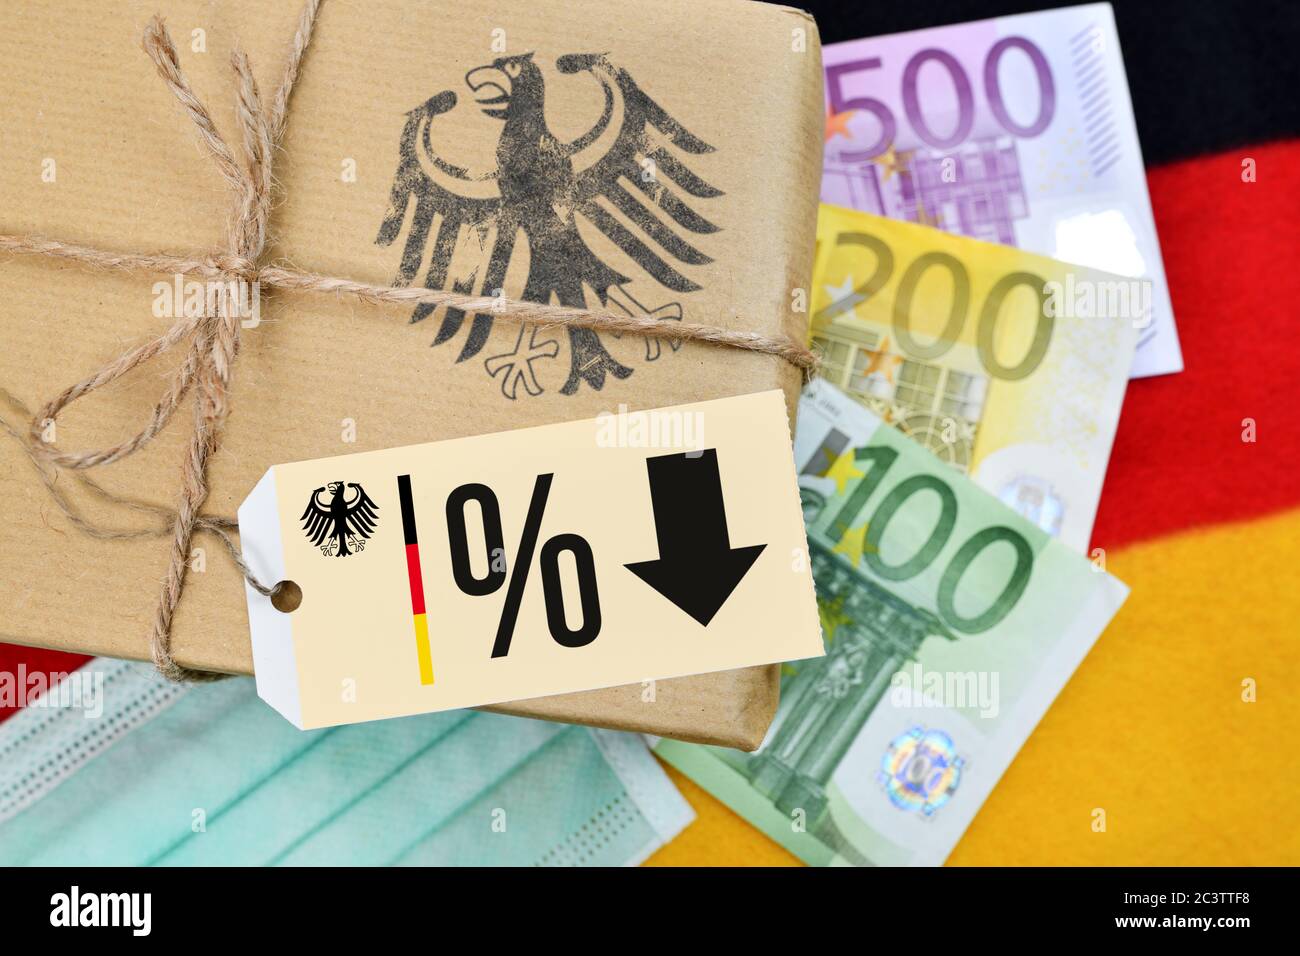 FOTOMONTAGE, Deutschland Paket auf Banner mit Etikett, Prozent Zeichen und Pfeil Symbol Foto Stimulus und Reduktion der Mehrwertsteuer, FOTOMONTAGE, Paket auf Deutsch Stockfoto